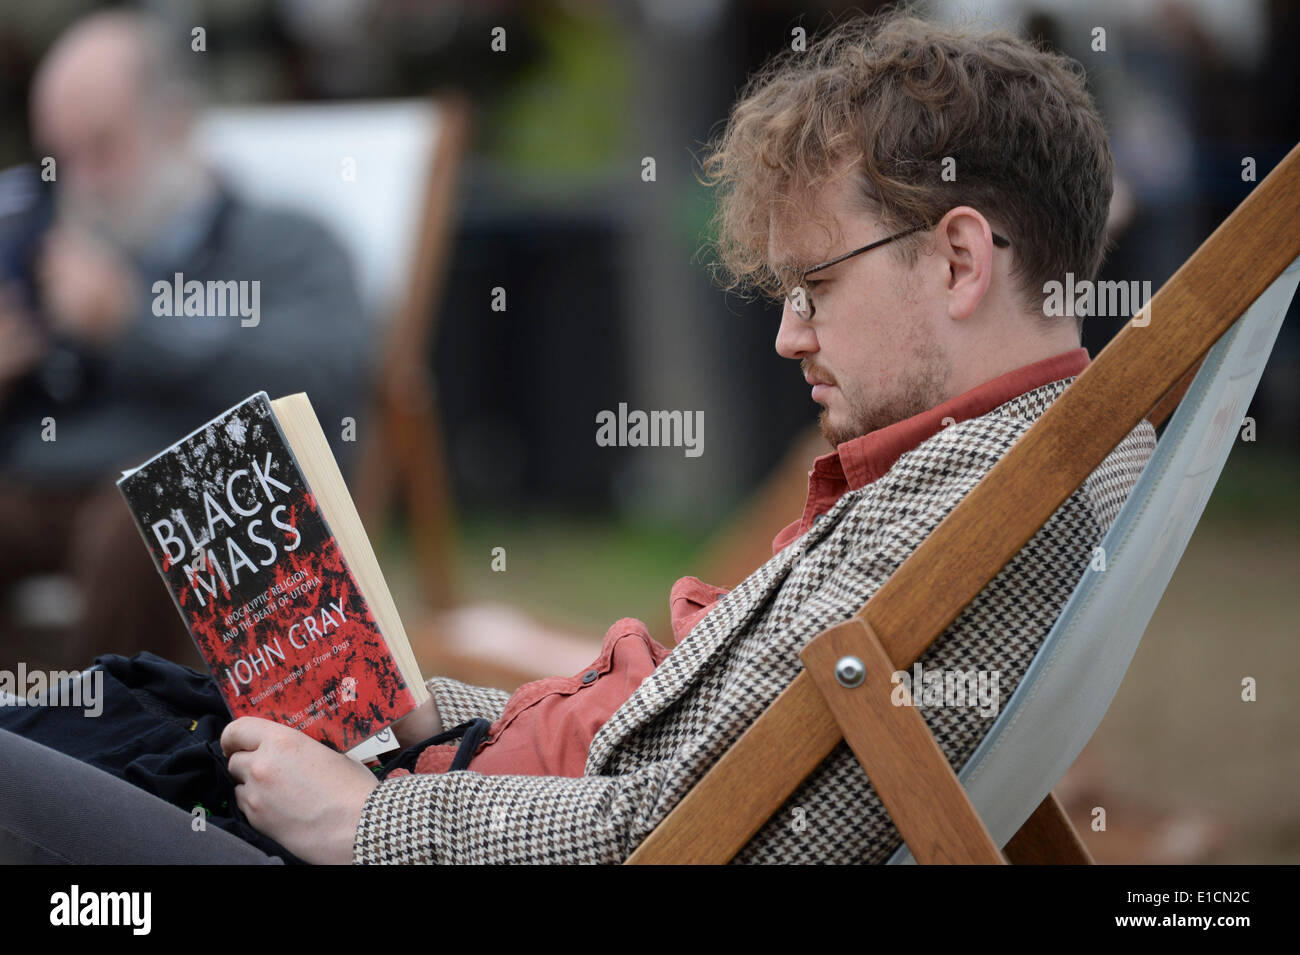 Hay on Wye, Wales Samstag 31 kann 2014 Leute sitzen in Liegestühlen, die Bücher zu lesen, am vorletzten Tag des Daily Telegraph Heu Literaturfestival 2014, Wales UK Foto © Keith Morris Stockfoto